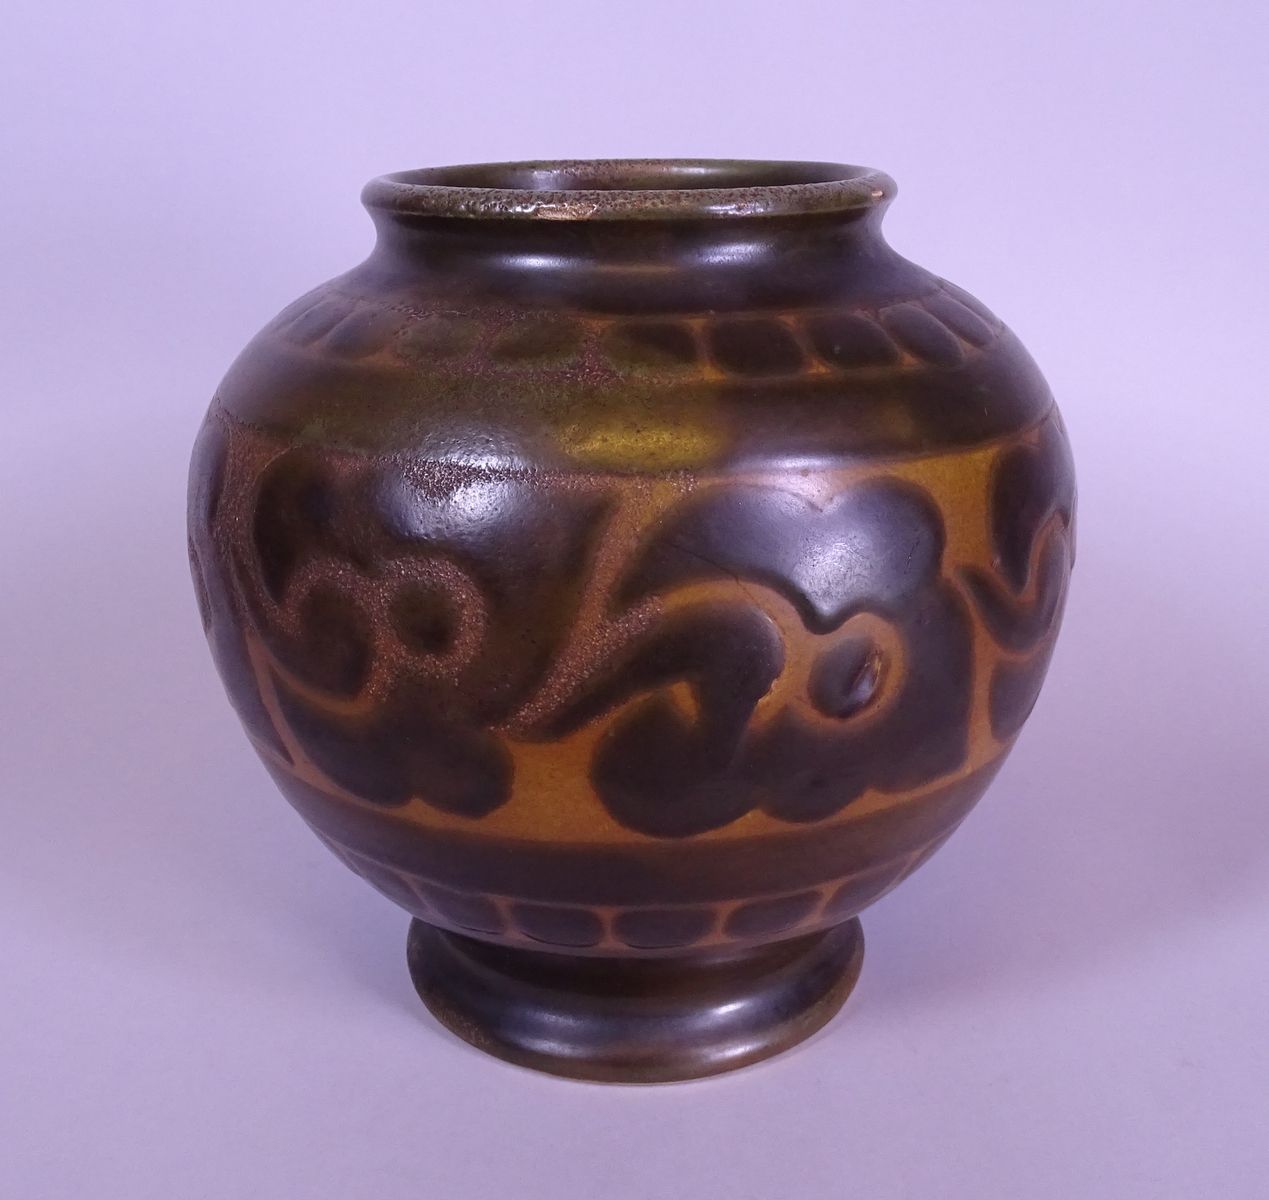 CATTEAU Charles Keramik: Vase aus braunem Steinzeug Boch Kéramis mit Blumenmuste&hellip;